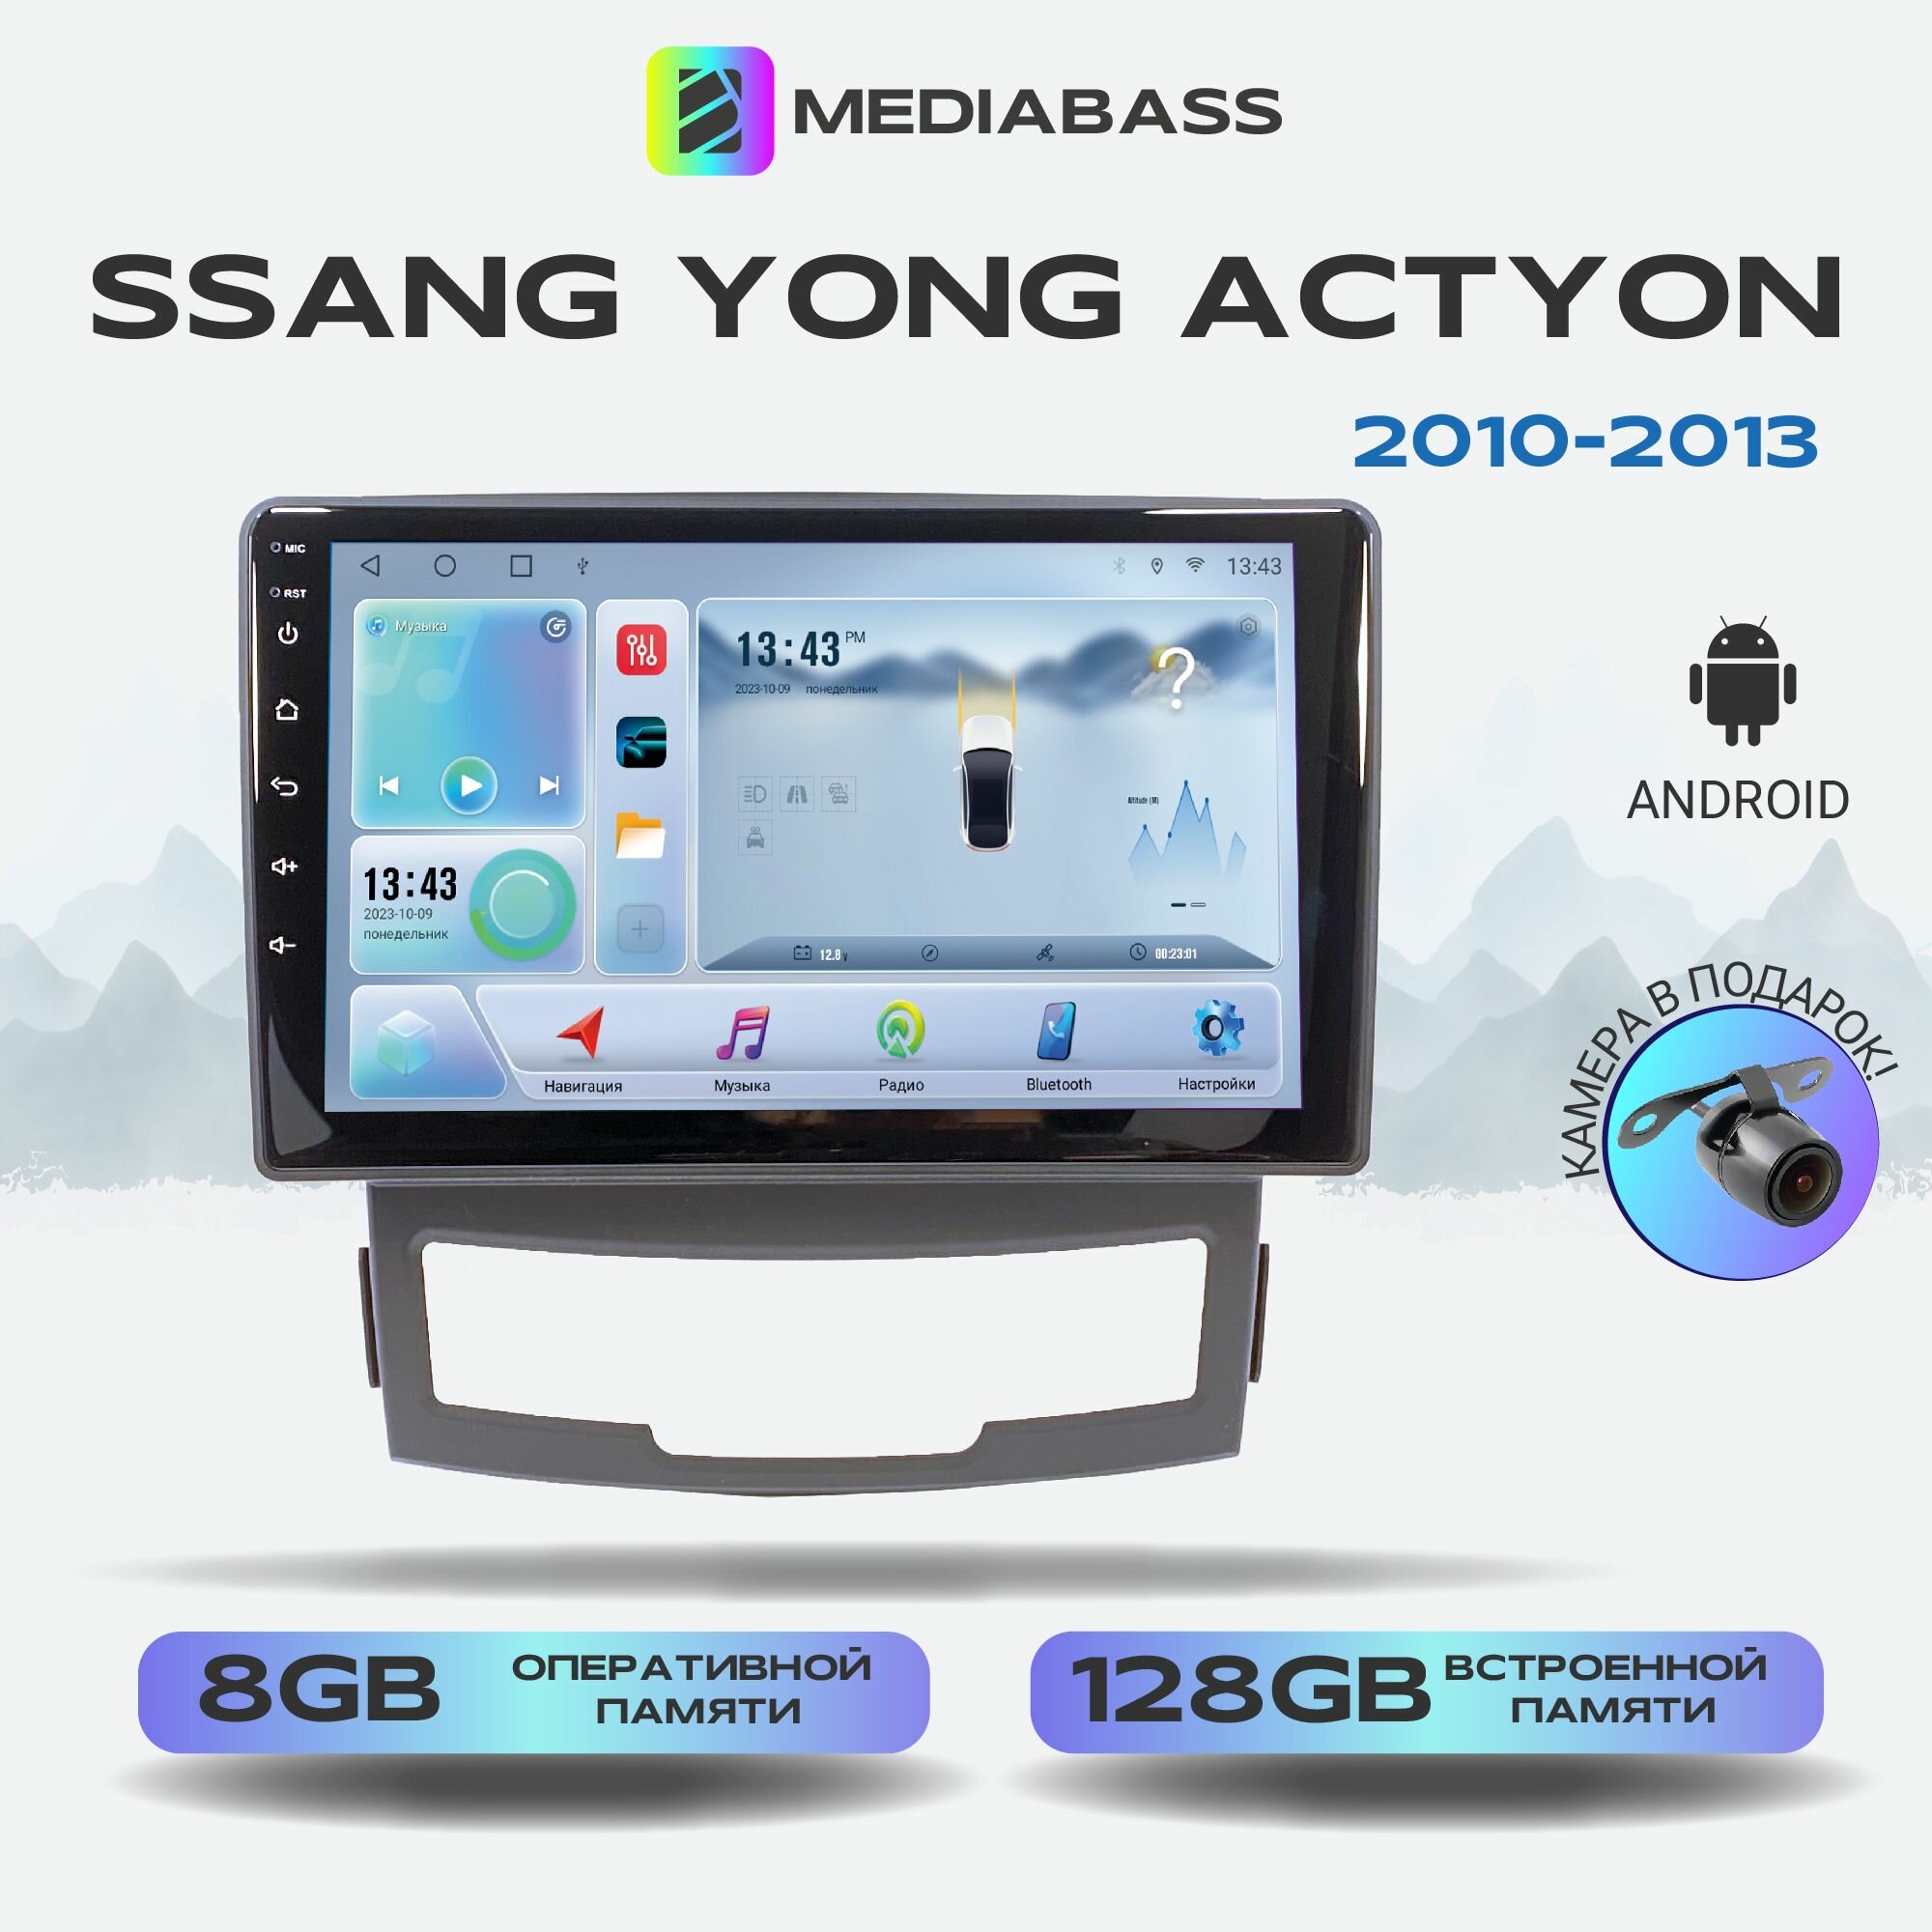 Автомагнитола Mediabass Ssang Yong Actyon 2010-2013, Android 12, 8/128ГБ, 8-ядерный процессор, DSP, 4G модем, голосовое управление, чип-усилитель TDA7851, 4G LTE / Санг Енг Актион